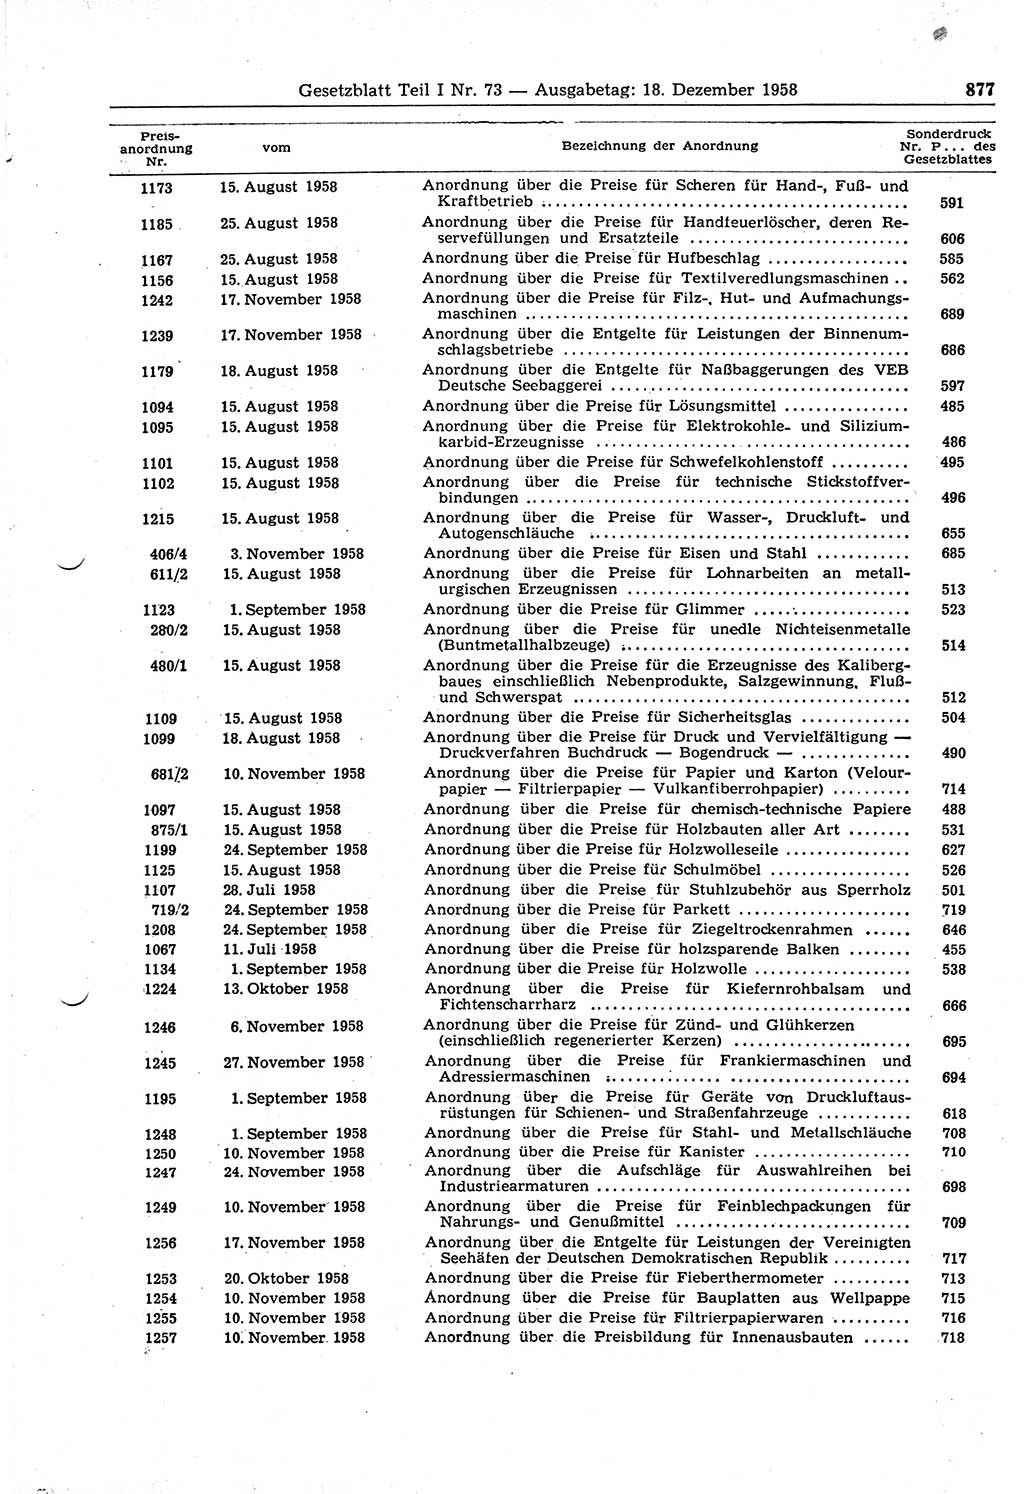 Gesetzblatt (GBl.) der Deutschen Demokratischen Republik (DDR) Teil Ⅰ 1958, Seite 877 (GBl. DDR Ⅰ 1958, S. 877)